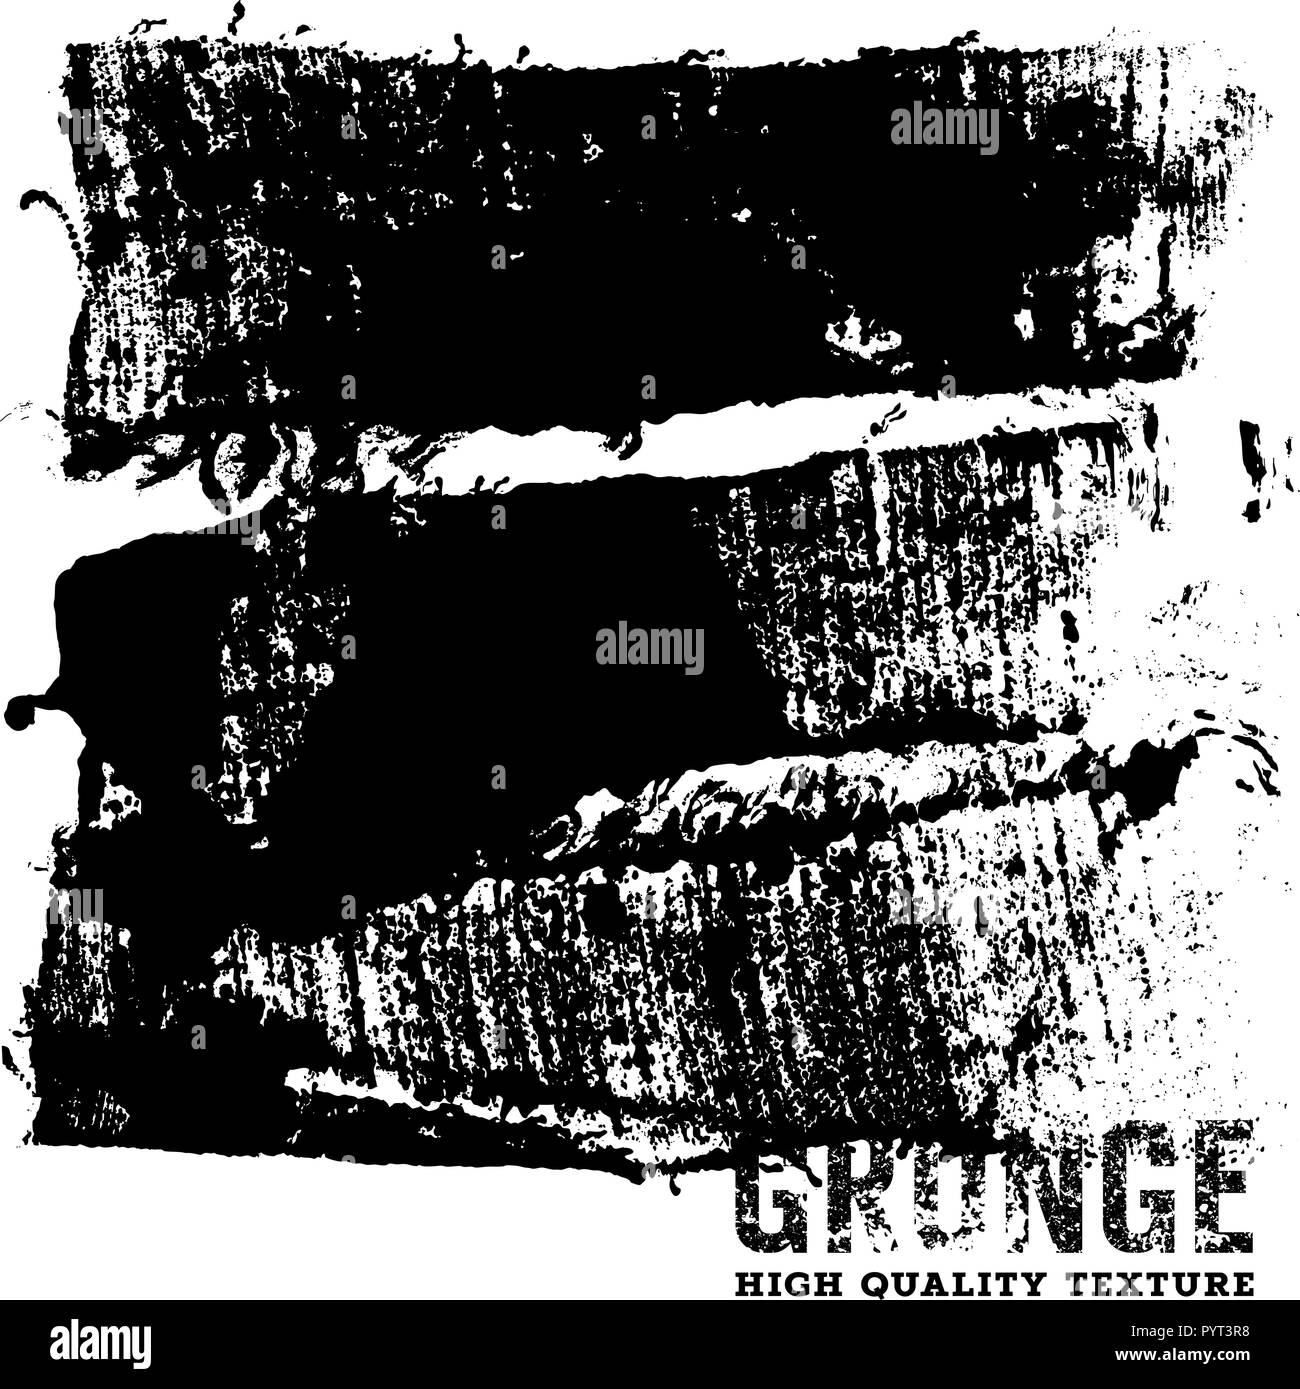 Grunge background / Grunge effetto sporco / Emergenza / Tessitura Tessitura artigianale di alta qualità / Abstract template vettoriale / Bianco e Nero Illustrazione Vettoriale